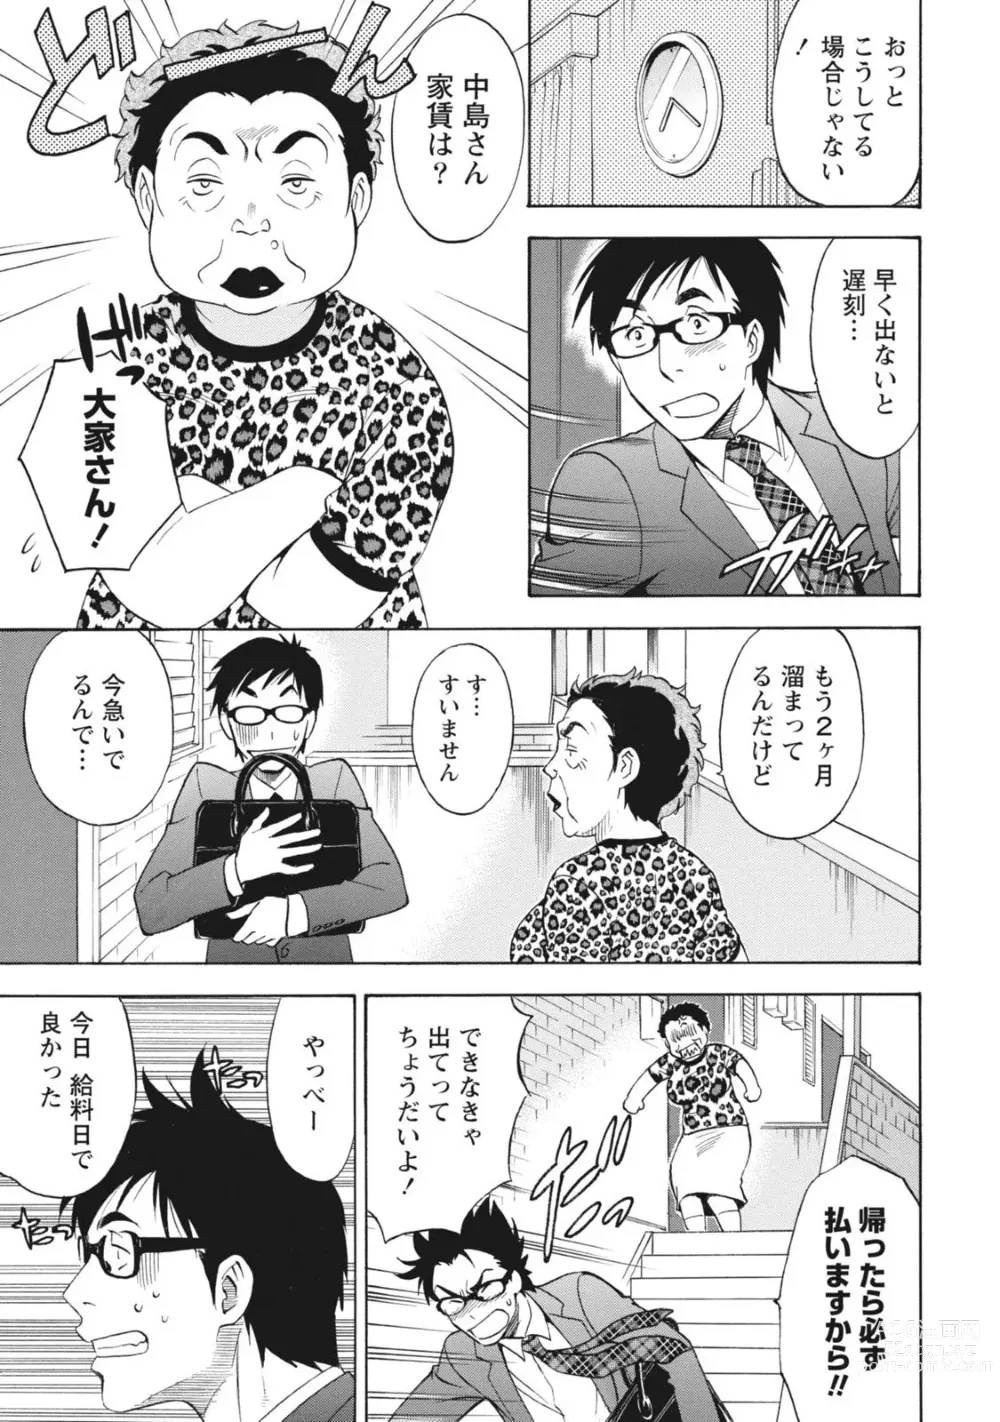 Page 9 of manga Nisekon!